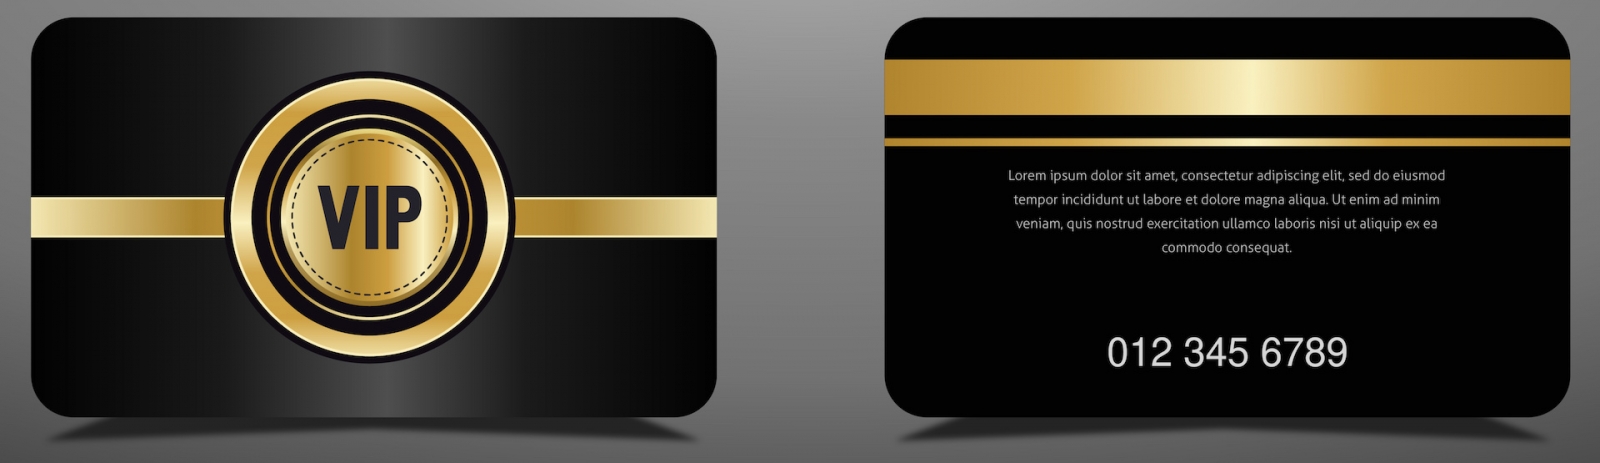 Luxuriöse goldene VIP-Karte und eleganter schwarzer Hintergrund, luxuriöses Design für VIP-Mitglieder.